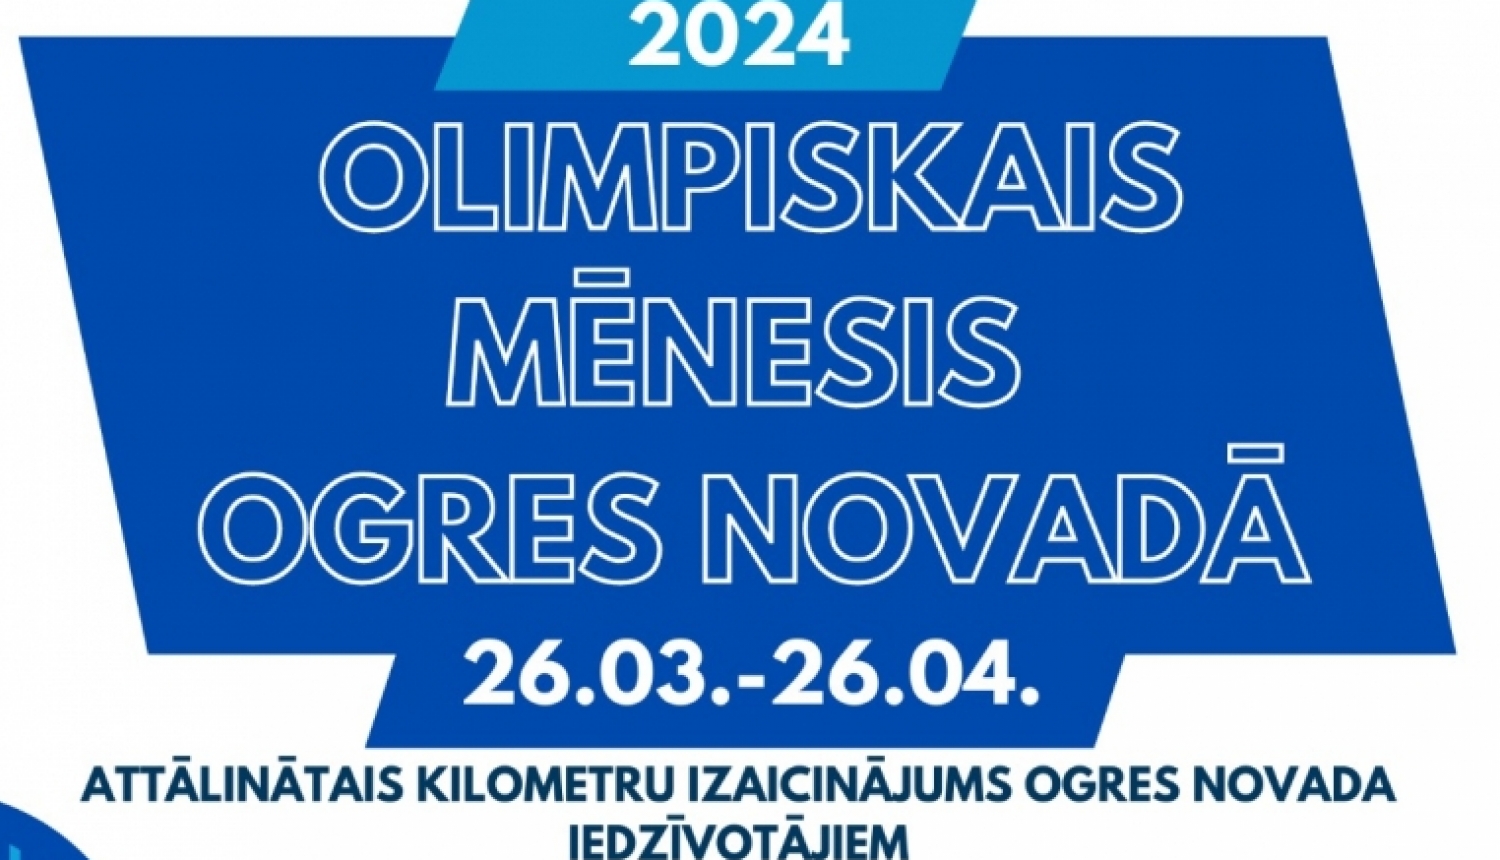 Afiša "Olimpiskais mēnesis 2024", aicinājums piedalīties ikvienam Ogres novada iedzīvotājam.